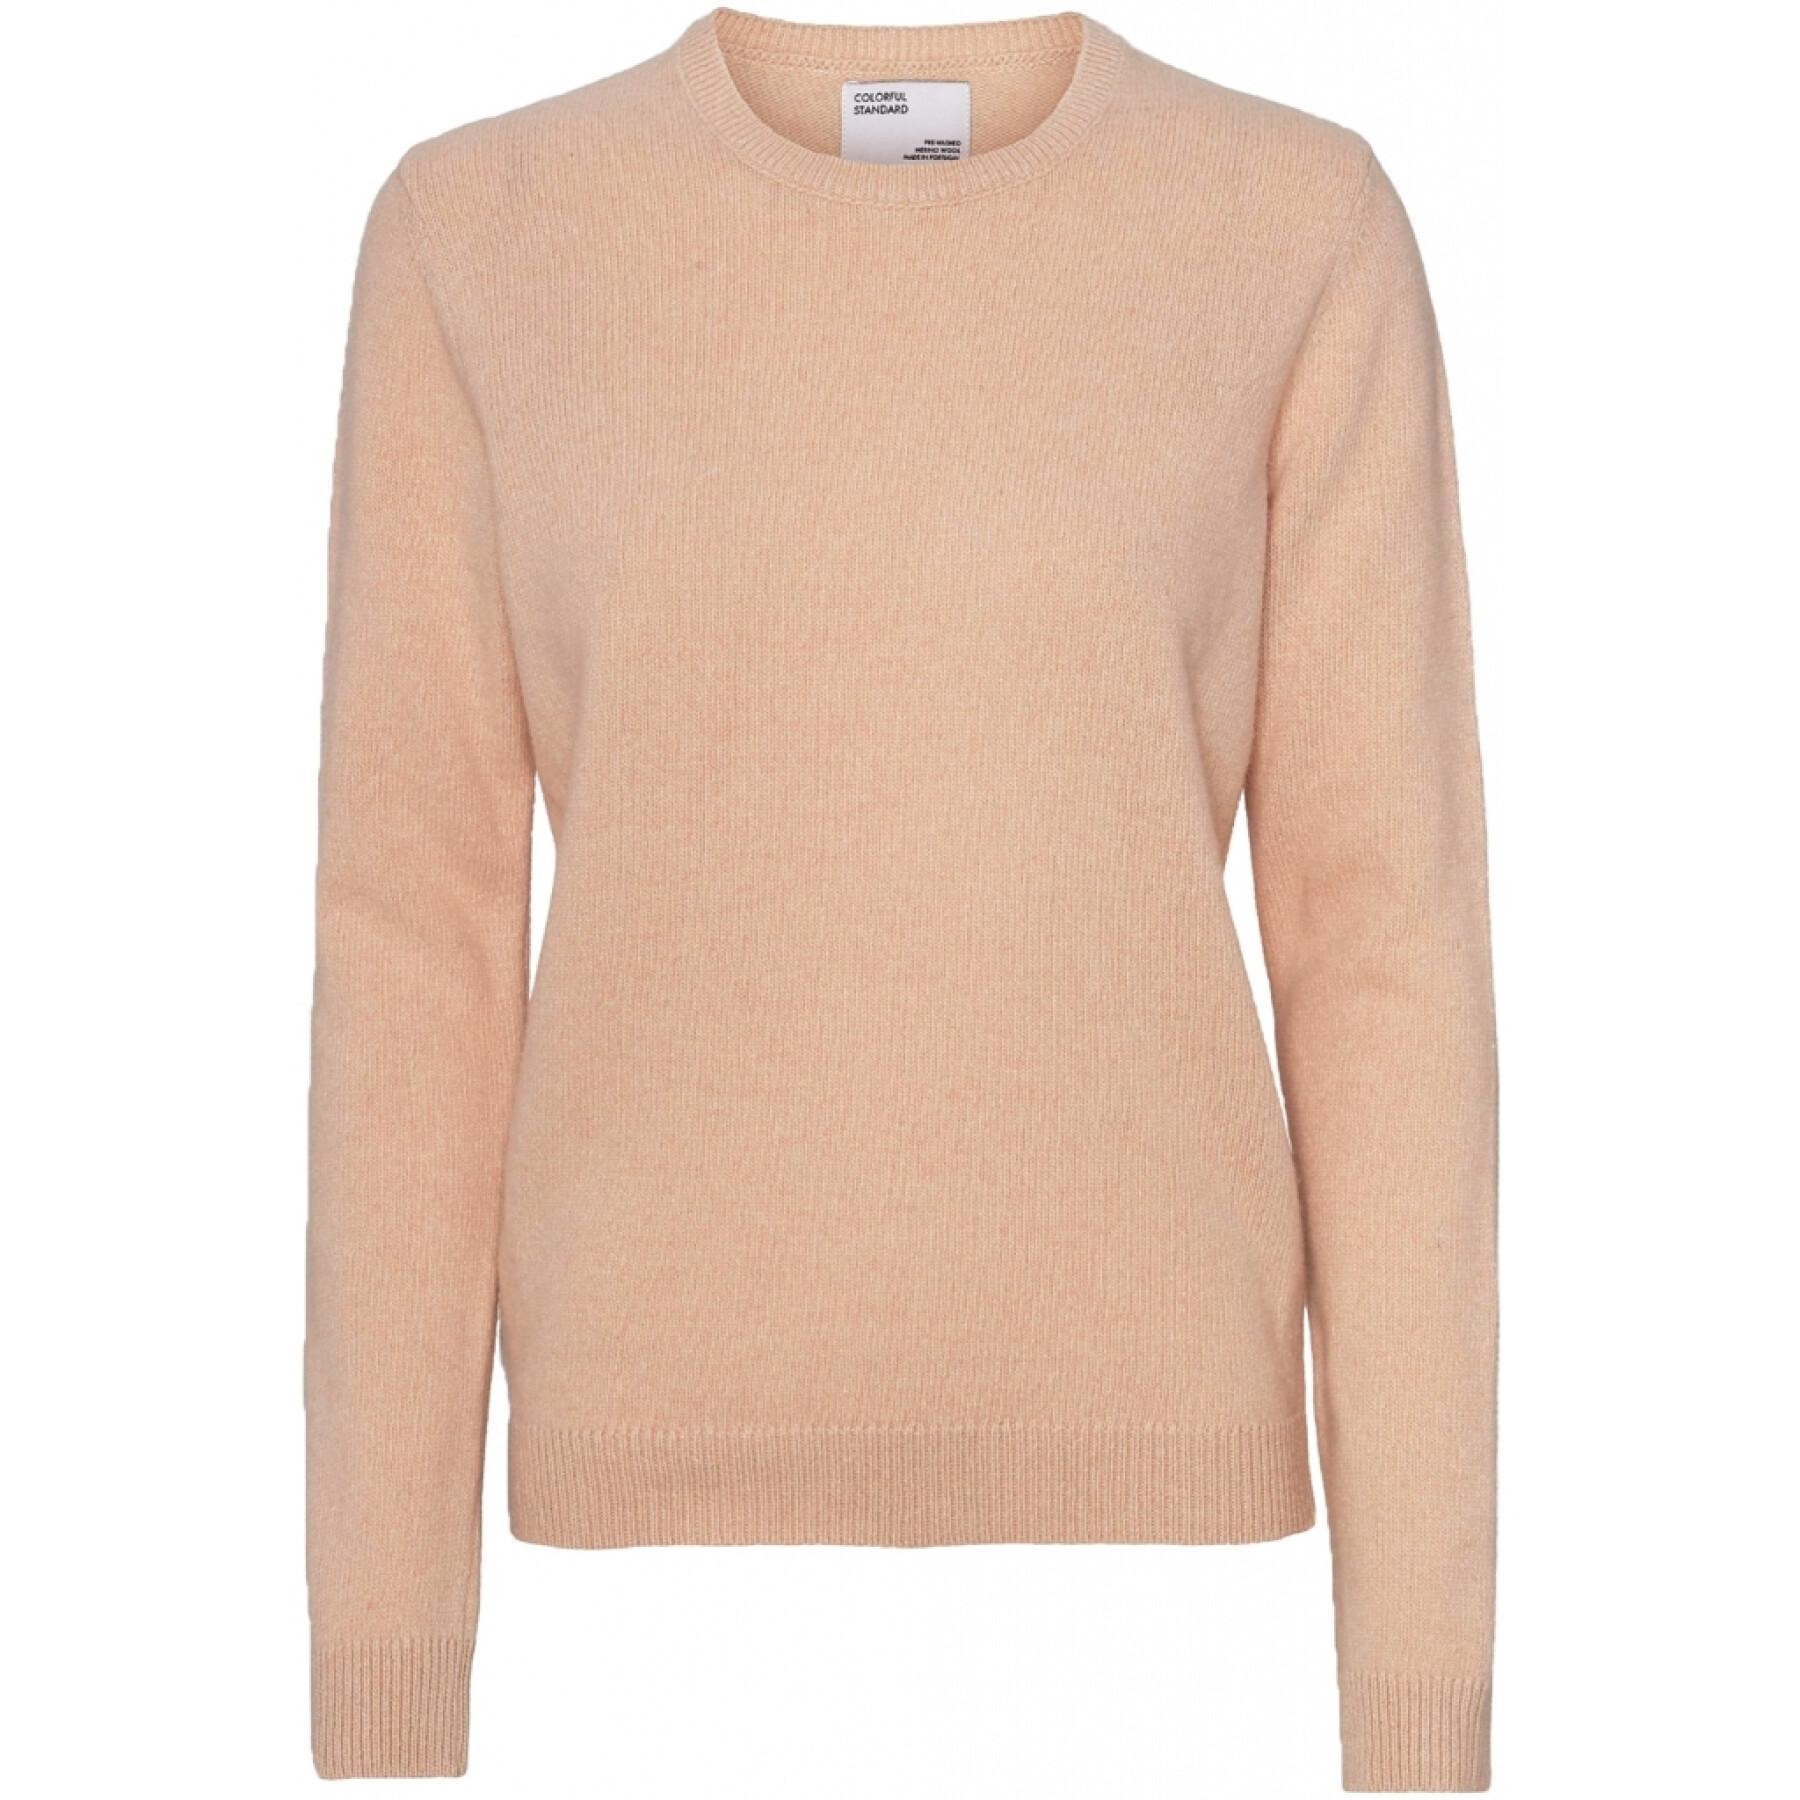 Women's wool round neck sweater Colorful Standard Classic Merino honey beige